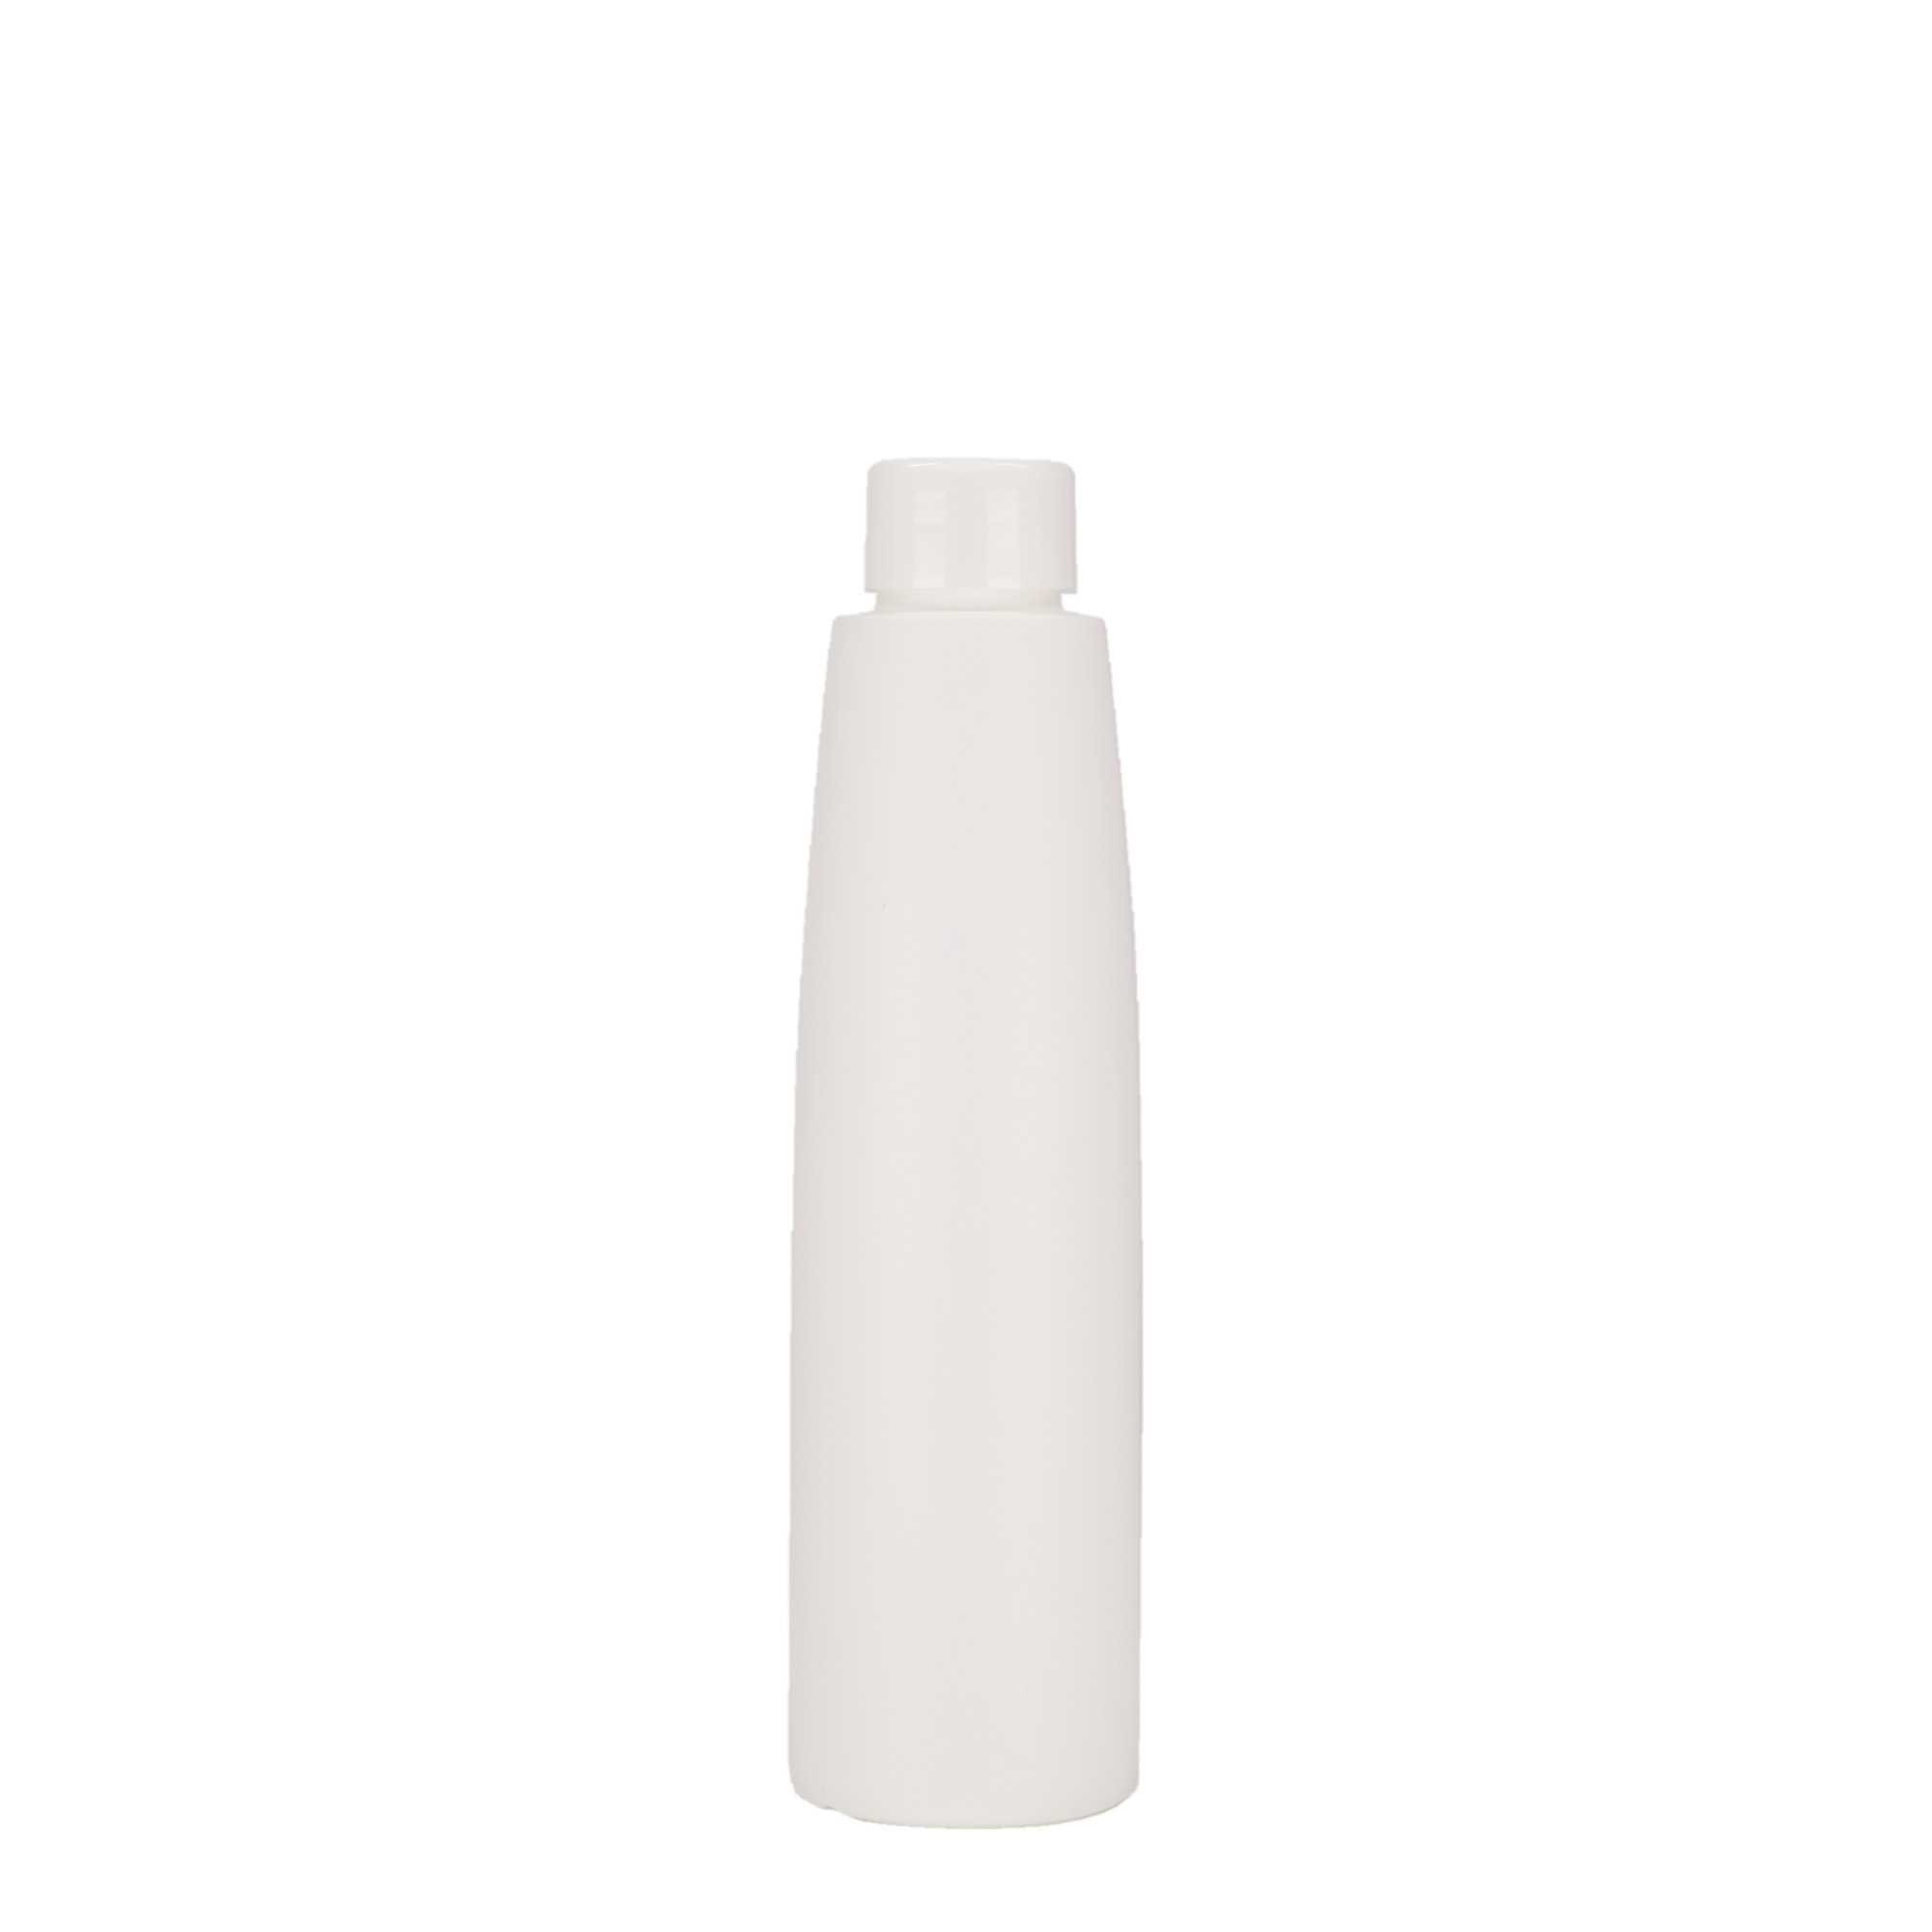 200 ml butelka z tworzywa sztucznego 'Donald', HDPE, kolor biały, zamknięcie: GPI 24/410